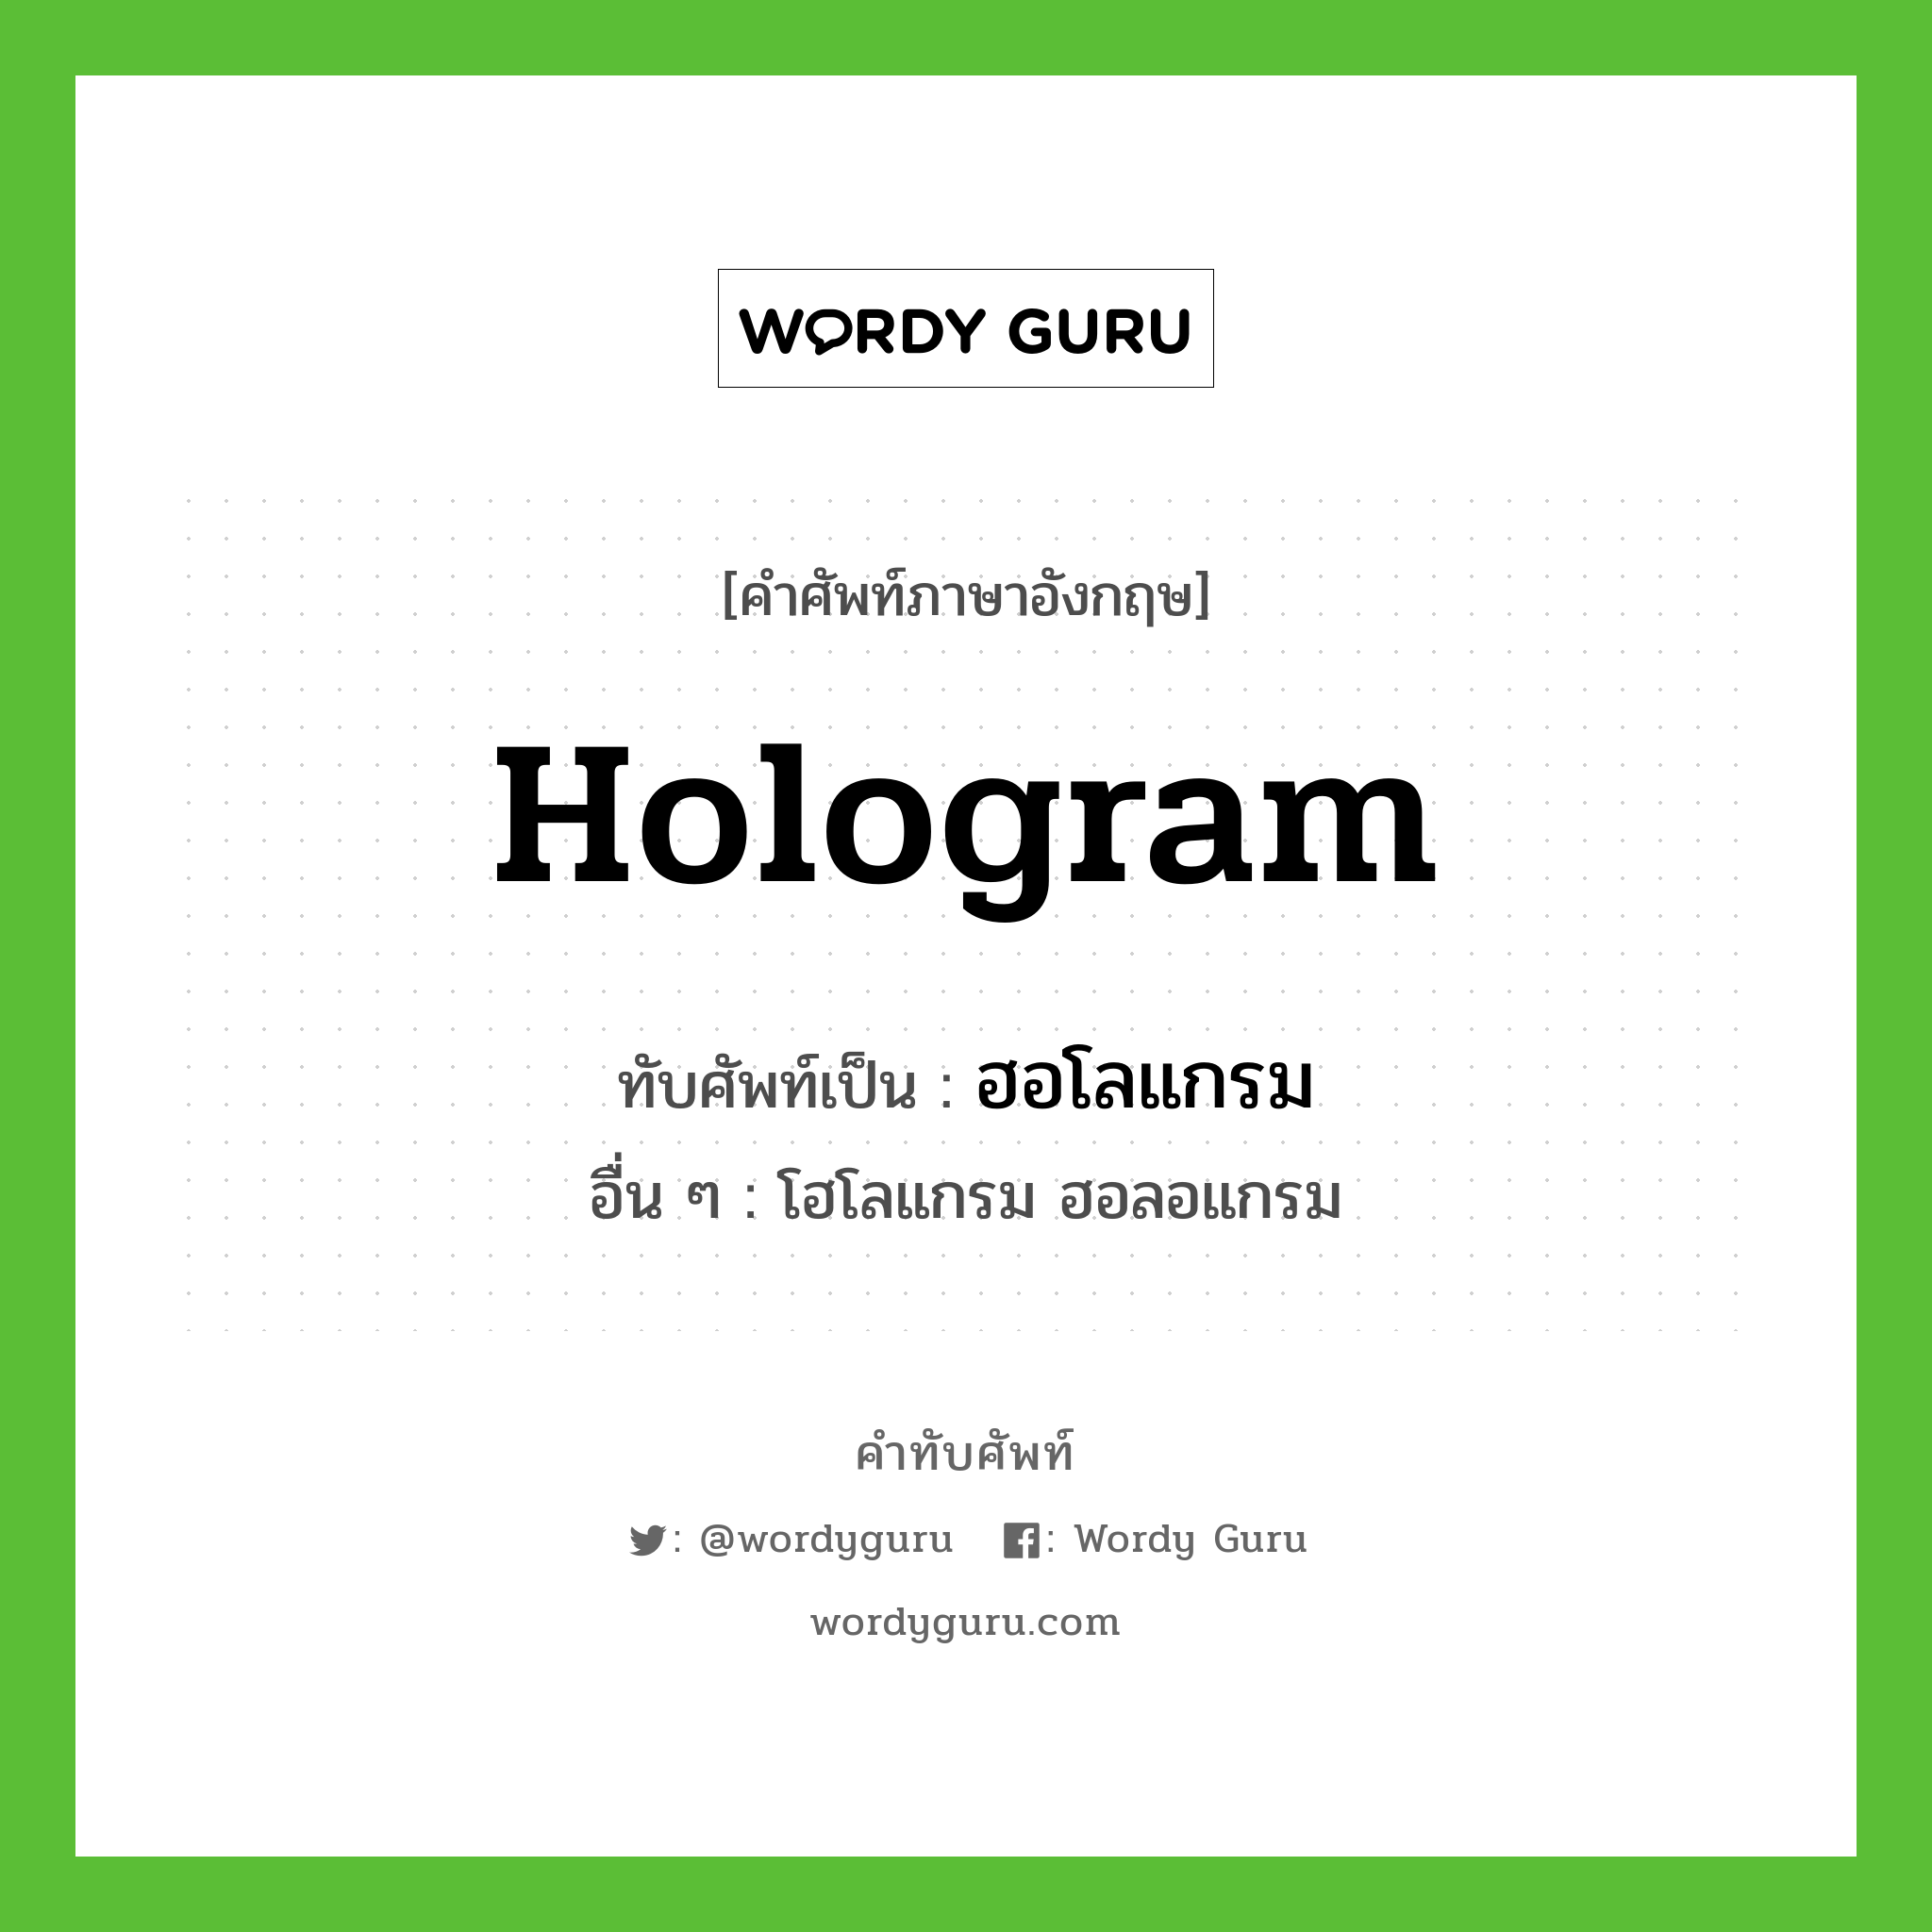 ฮอโลแกรม เขียนอย่างไร?, คำศัพท์ภาษาอังกฤษ ฮอโลแกรม ทับศัพท์เป็น hologram อื่น ๆ โฮโลแกรม ฮอลอแกรม